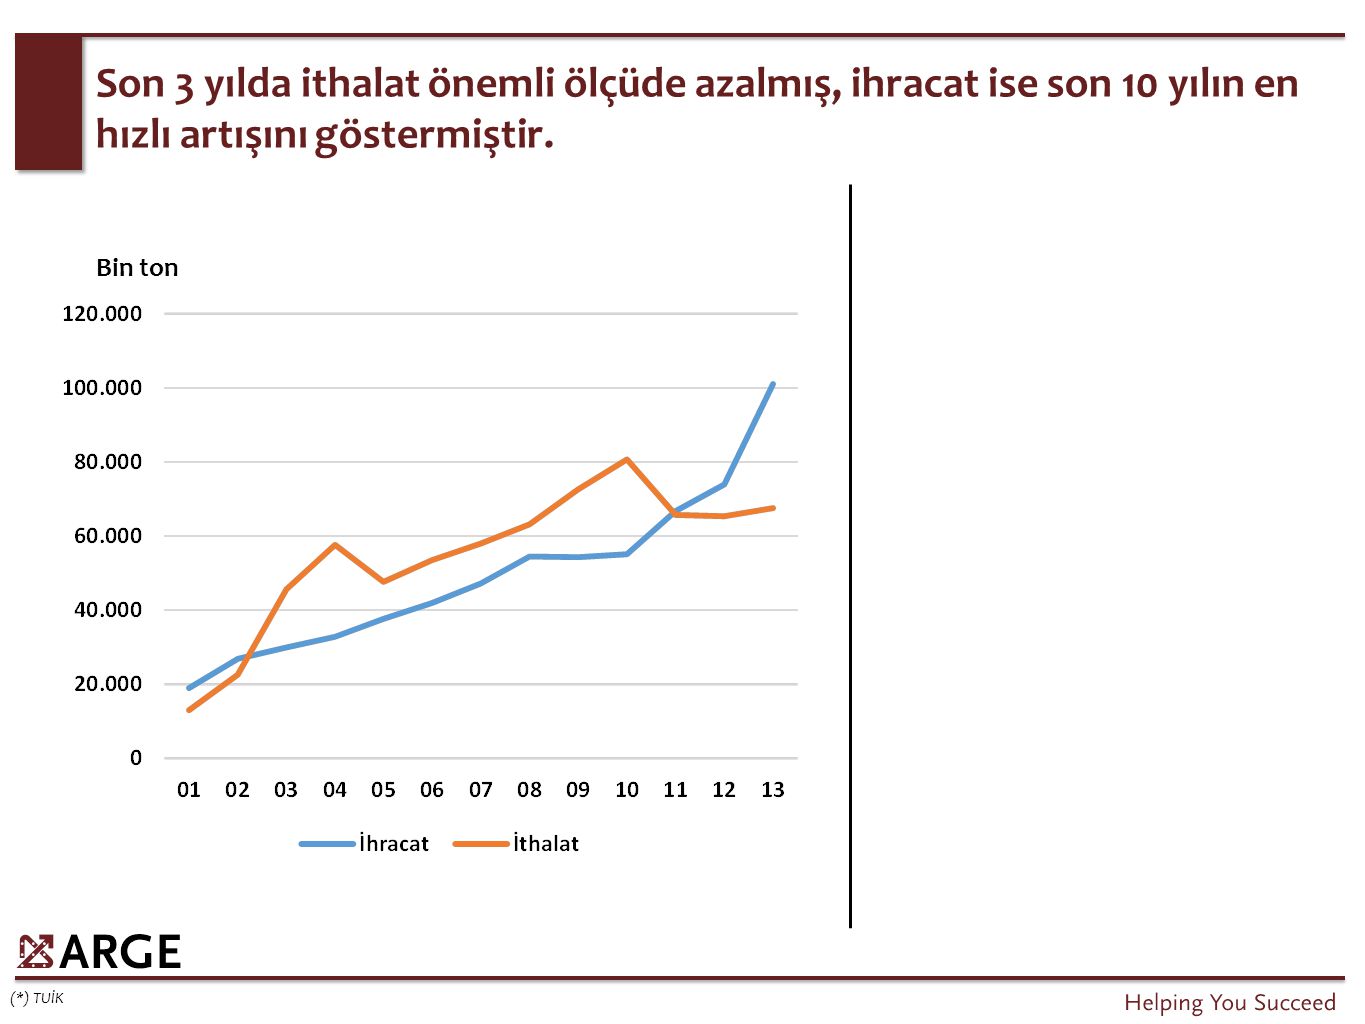 Türkiye’de kişi başı balık tüketimi 2007 yılından itibaren sürekli azalış göstermektedir.